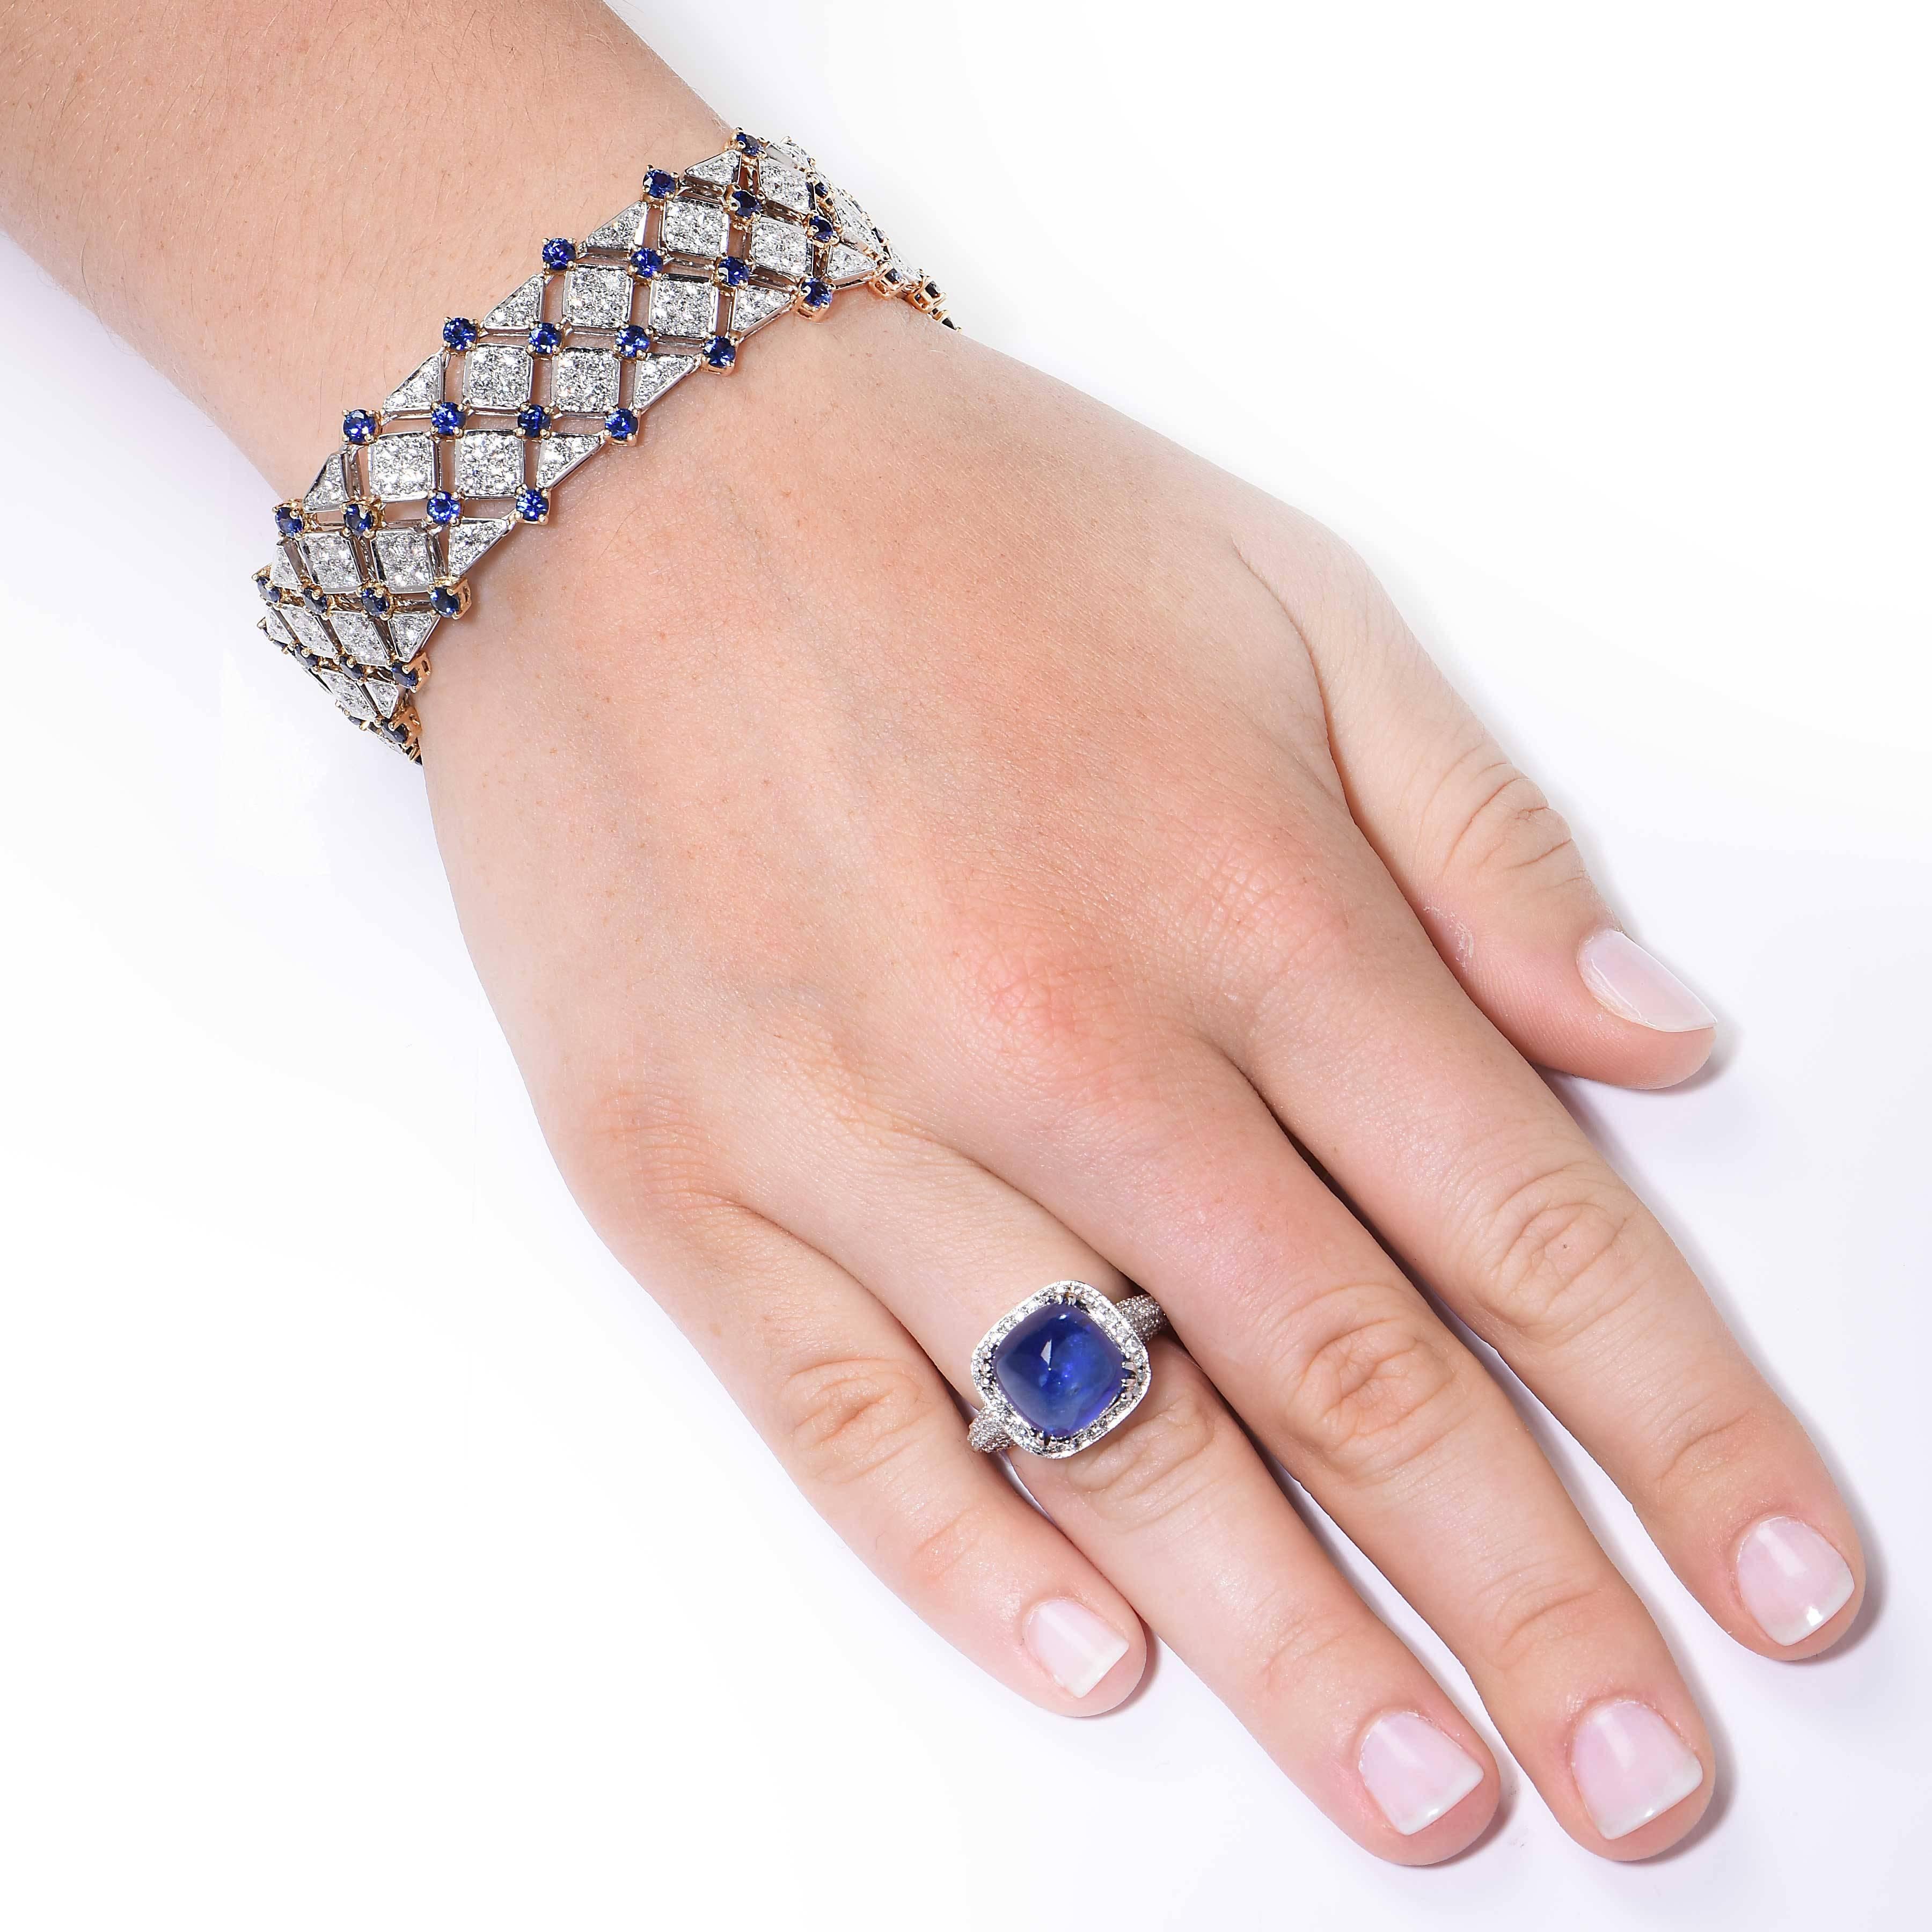 Bracelet Tiffany & Co. de la collection Trellis. Sertie de 64 saphirs pesant approximativement 9.25 carats et de diamants ronds pesant approximativement 9.15 carats. Les diamants sont de couleur F/G et de pureté VVS/VS. 

Le prix de vente actuel de